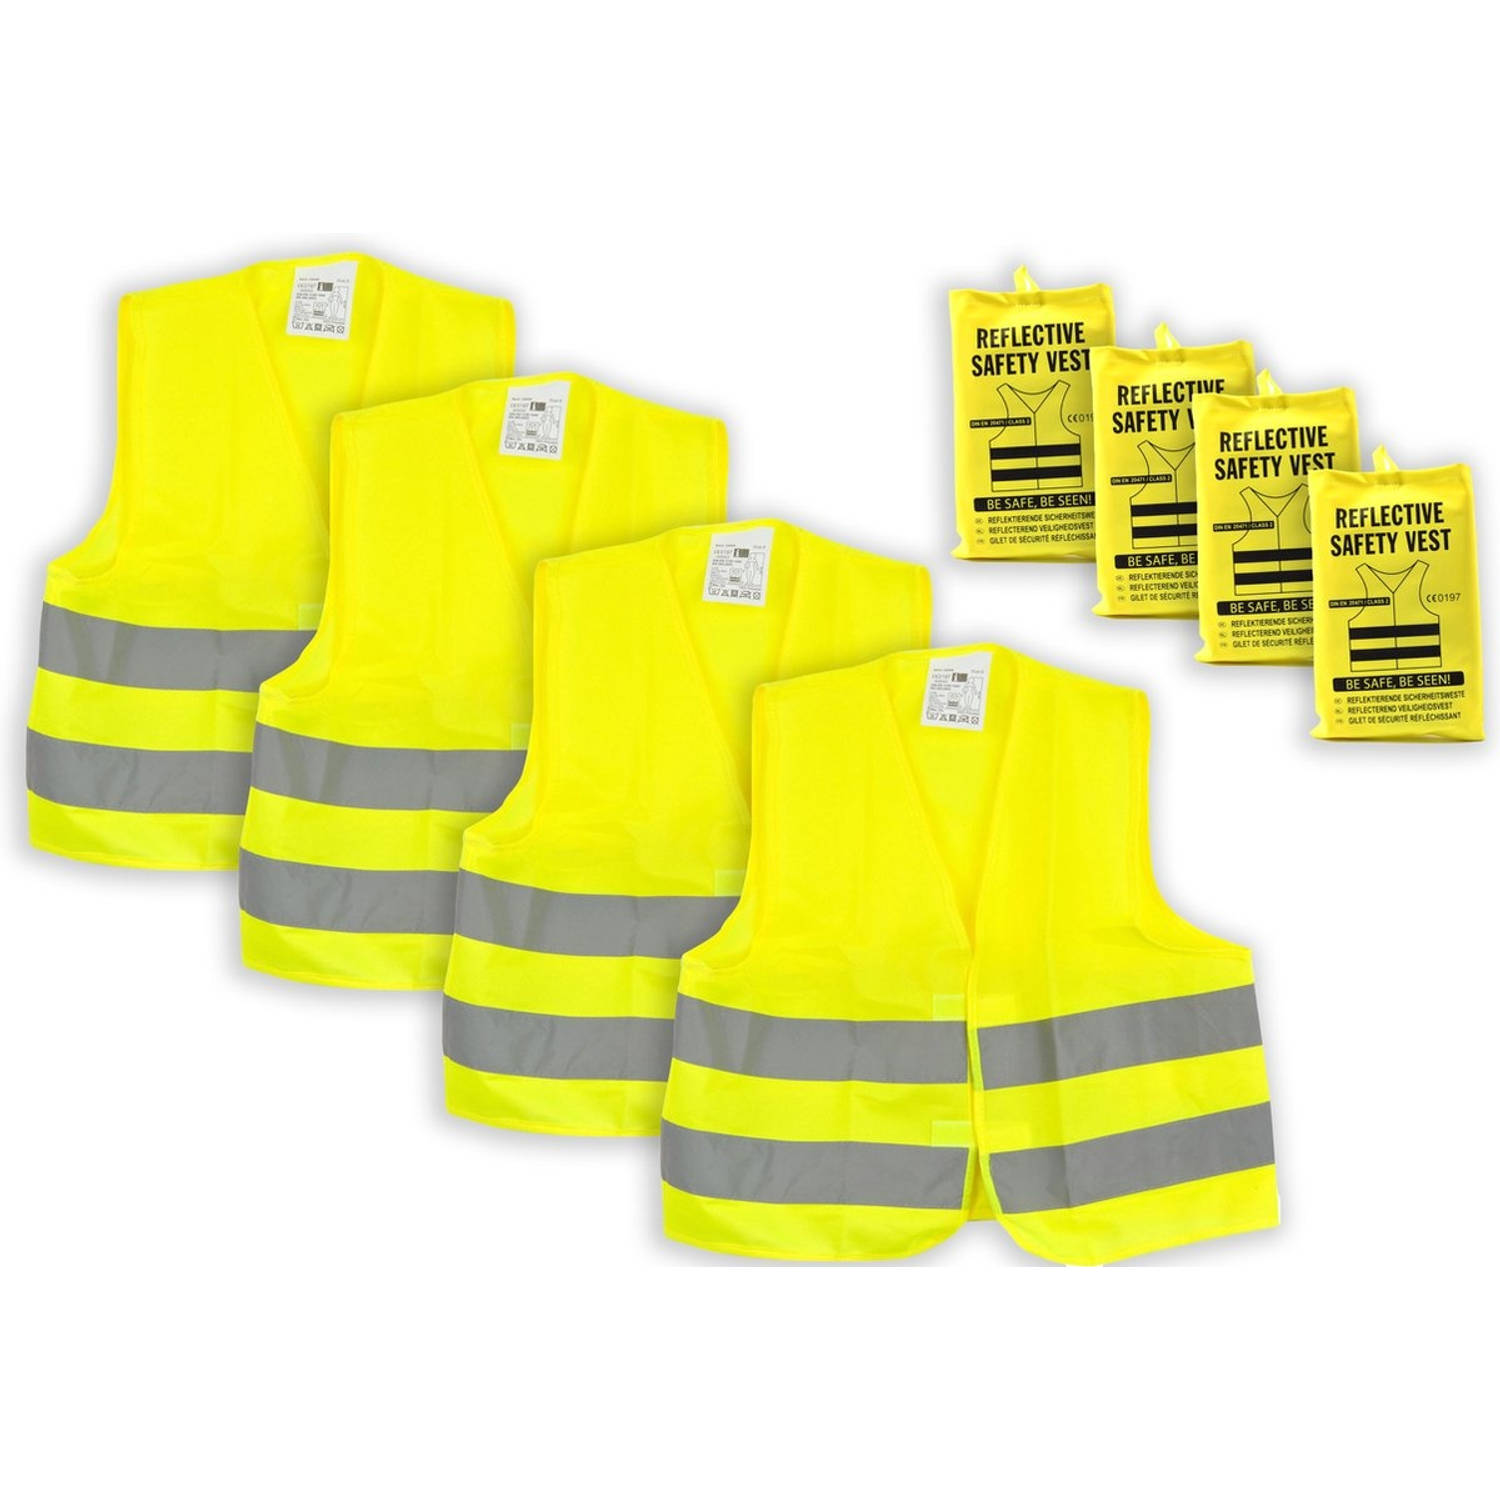 Veiligheidshesje 4 stuks in de verpakking - 4x veiligheidsvest in mooi zak Geel| Veilig safety | Veiligheidshesje | Bouw | Verkeer | veiligheidsvest voor veiligheidswaarschuwing -